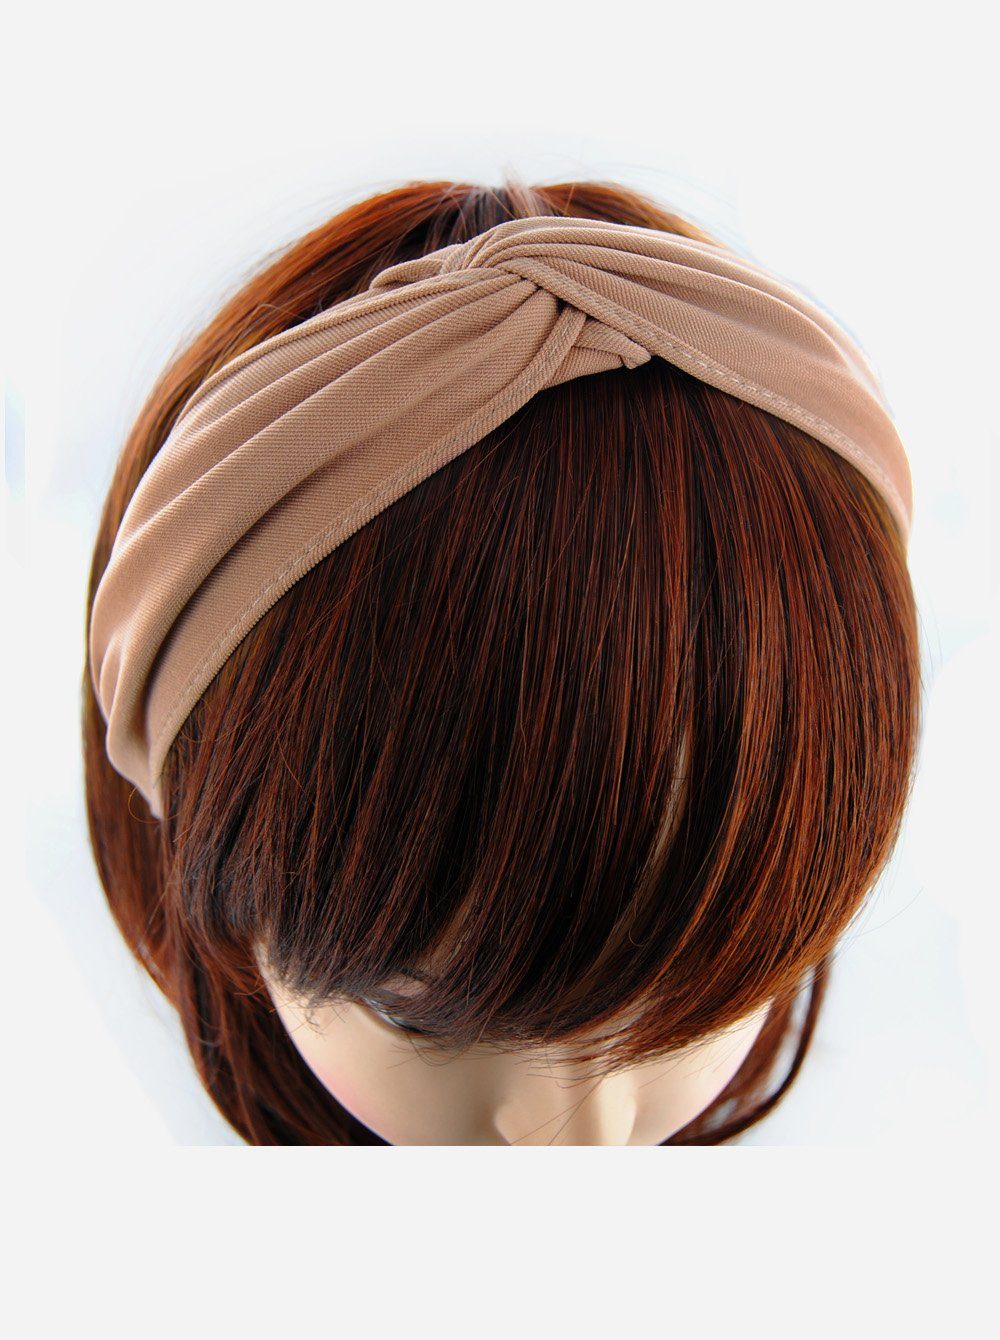 axy Haarreif Breiter Haarreif mit raffinierten Knoten, Vintage Klassik-Look Damen Haareifen Haarband Beige